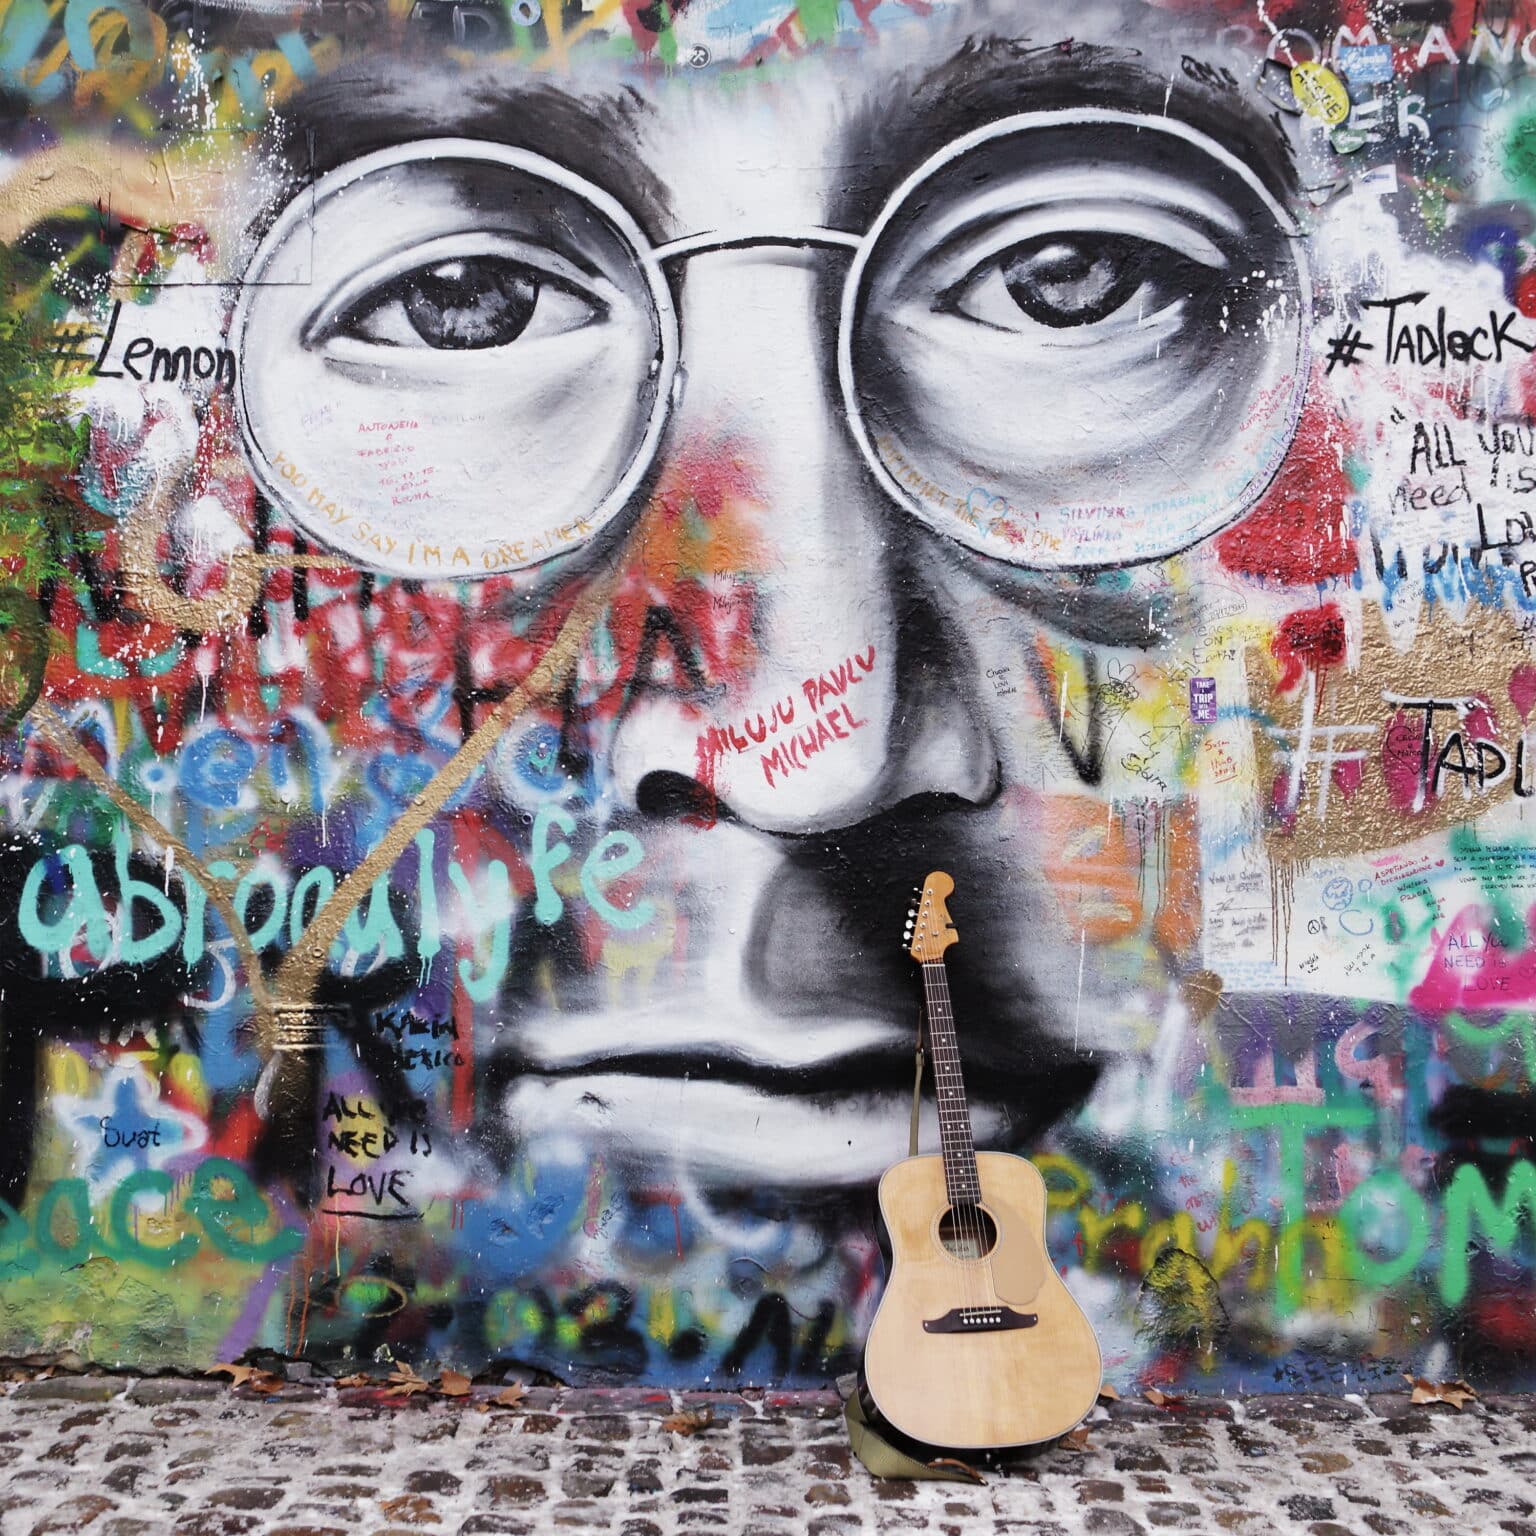 גיטרה אגדית של ג’ון לנון נמכרה בכ-3 מיליון דולר